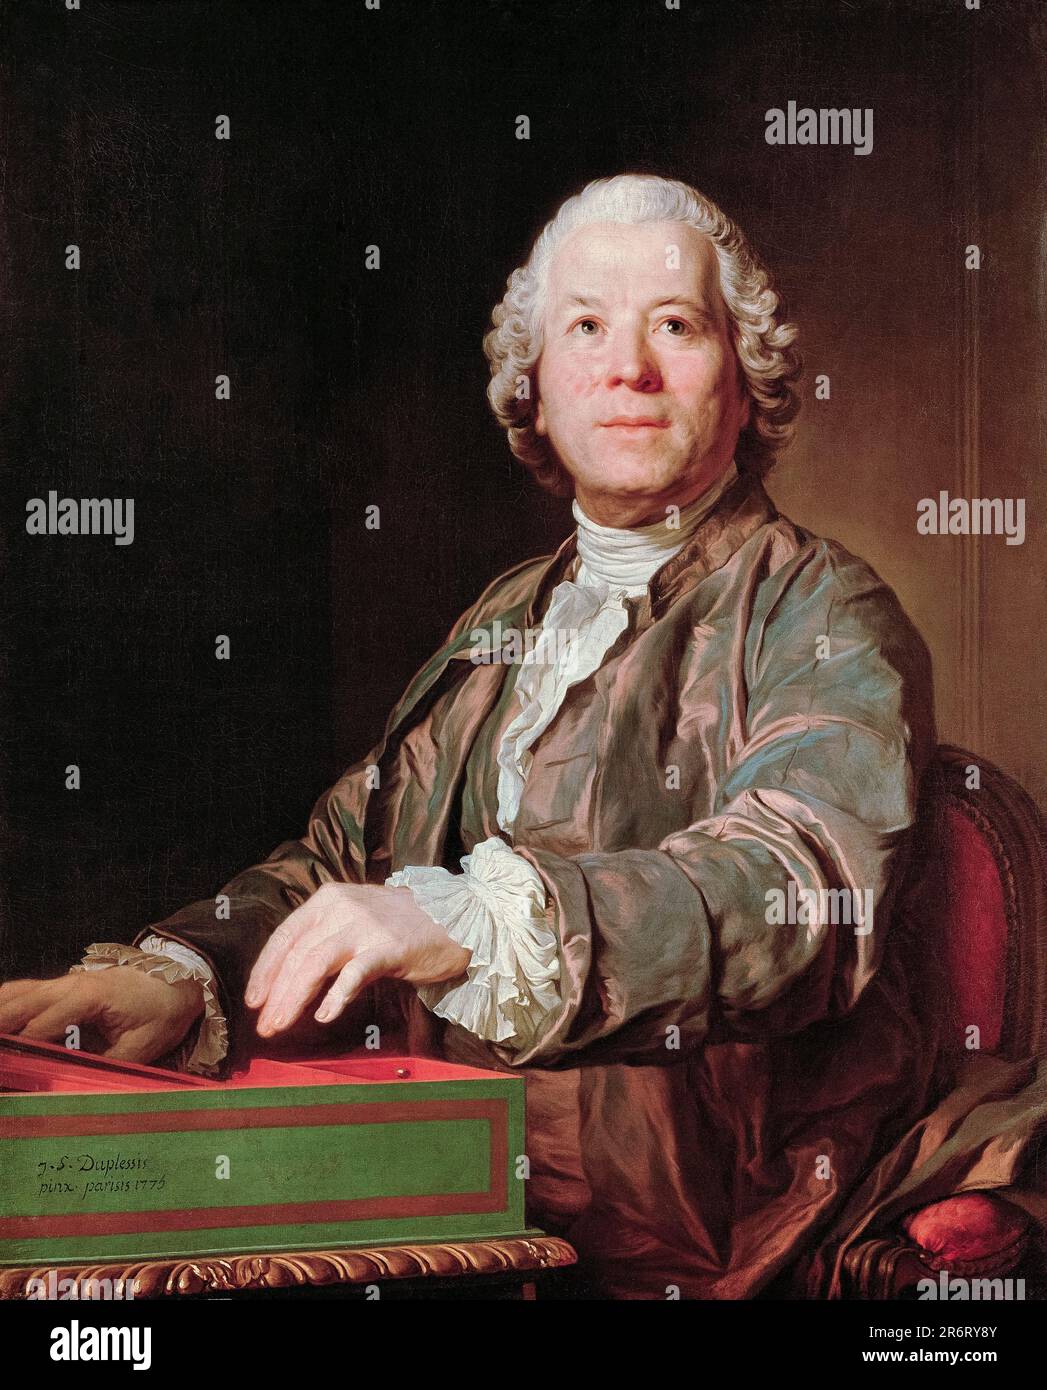 Christoph Willibald Gluck (1714-1787), compositeur d'opéra italien et français, portrait peint à l'huile sur toile par Joseph Duplessis, 1775 Banque D'Images